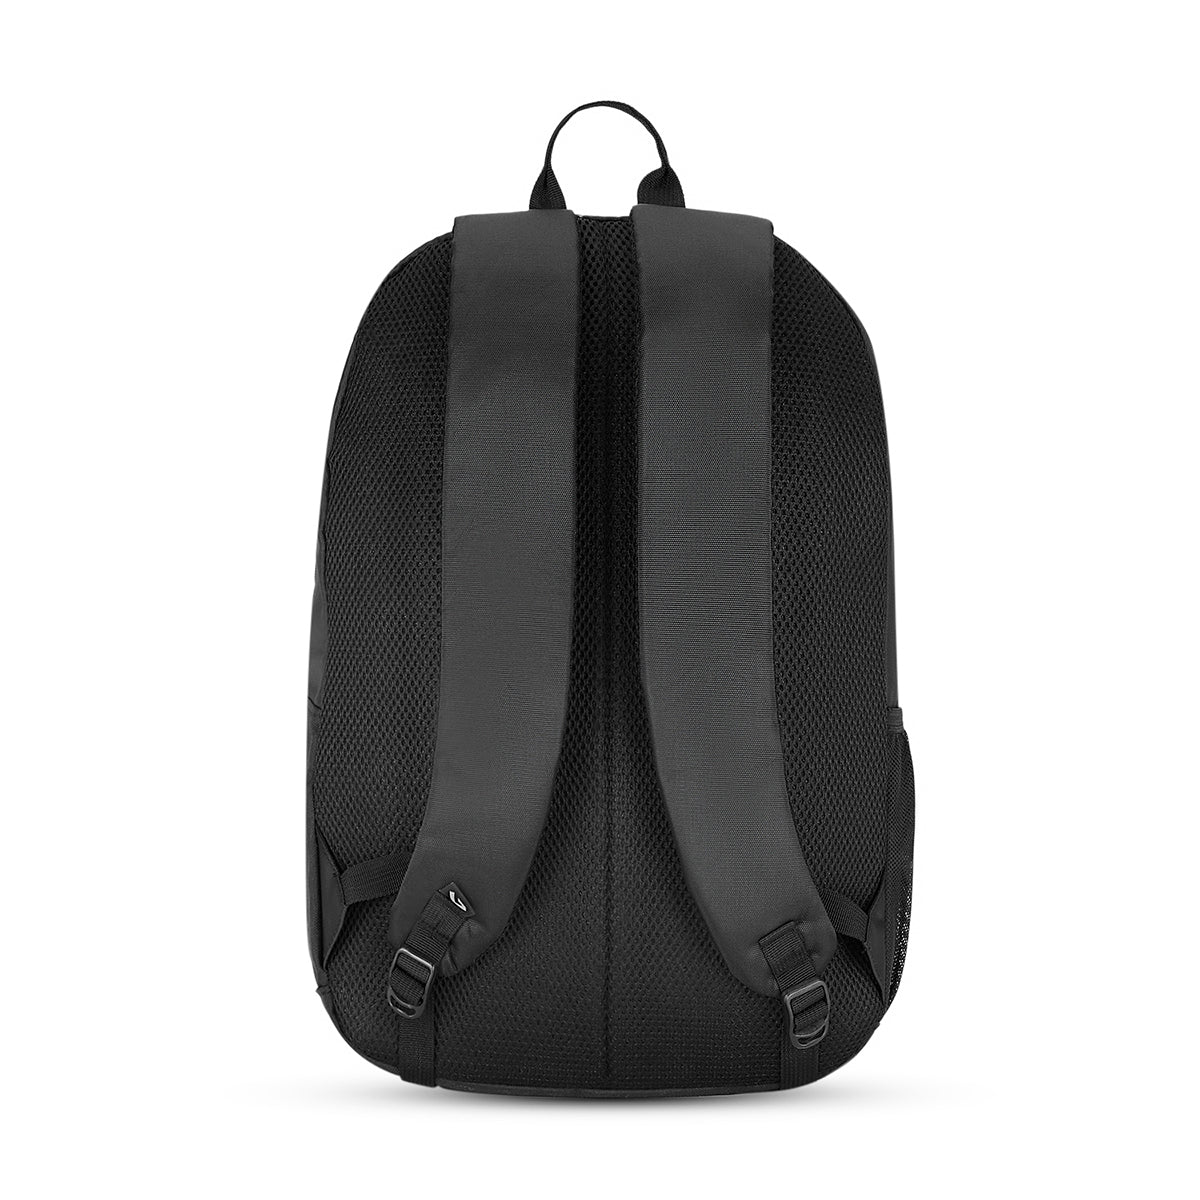 The Vertical Jace Backpack Black